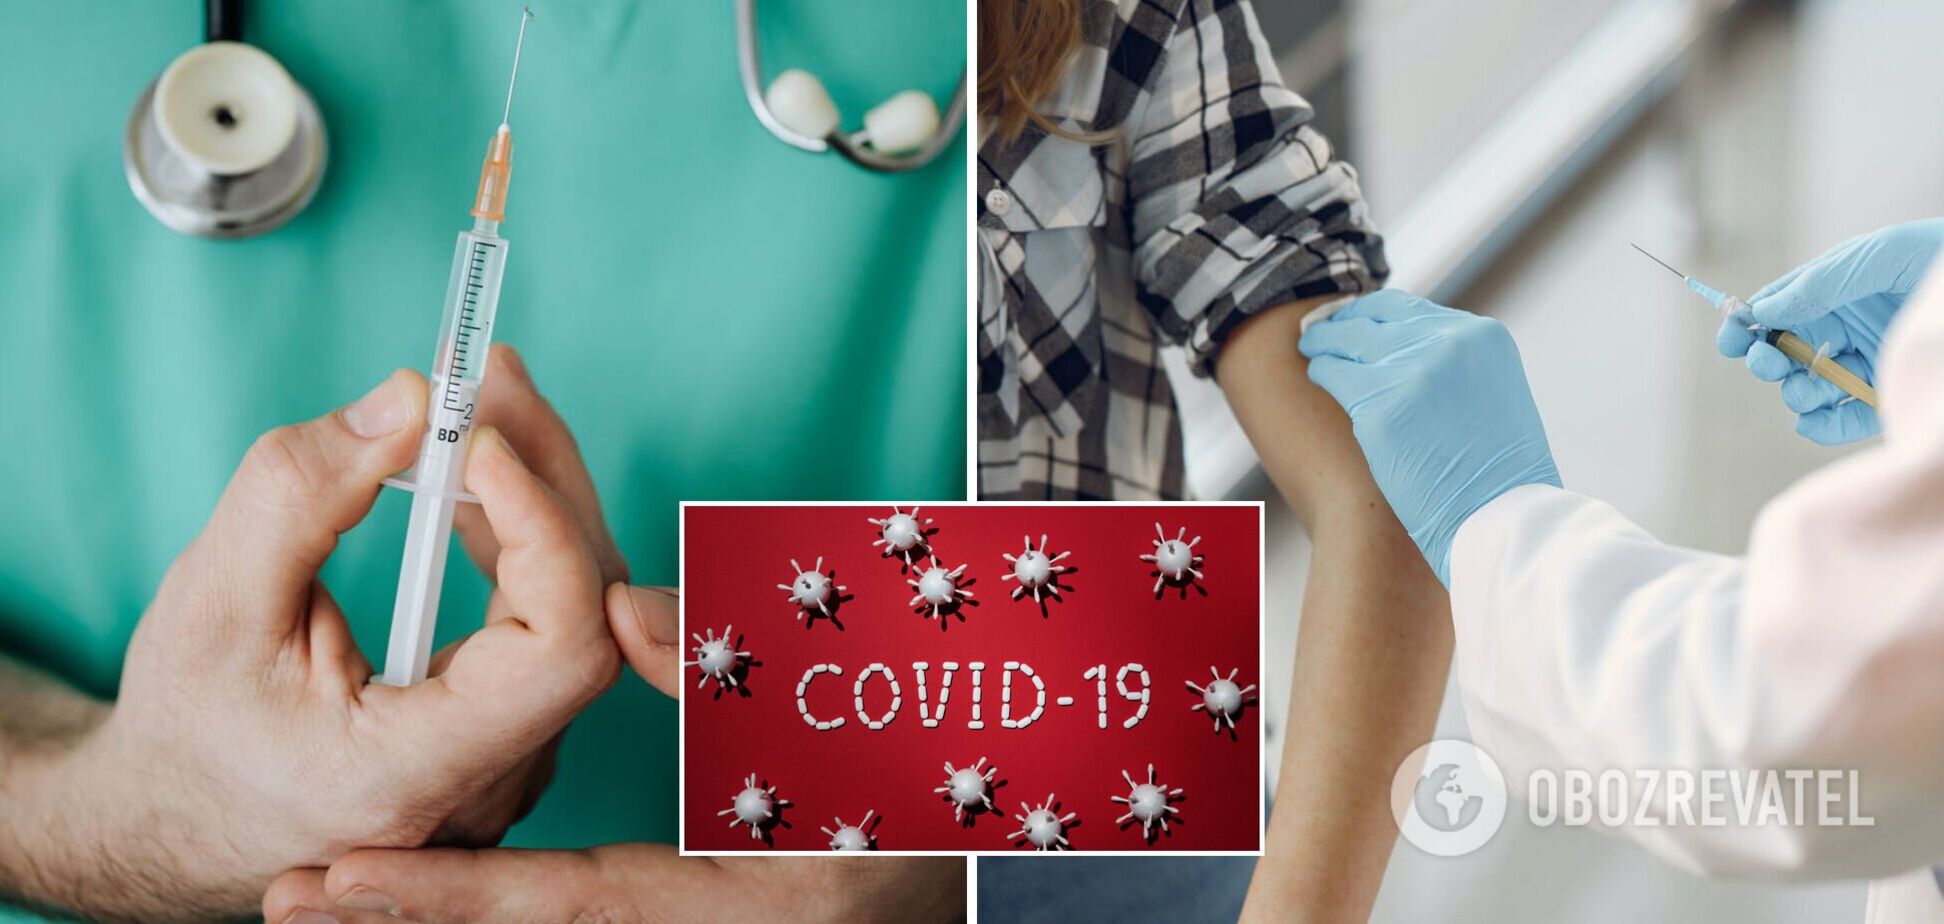 МОЗ затвердило форму довідки про протипоказання до вакцинації від COVID-19: що потрібно знати